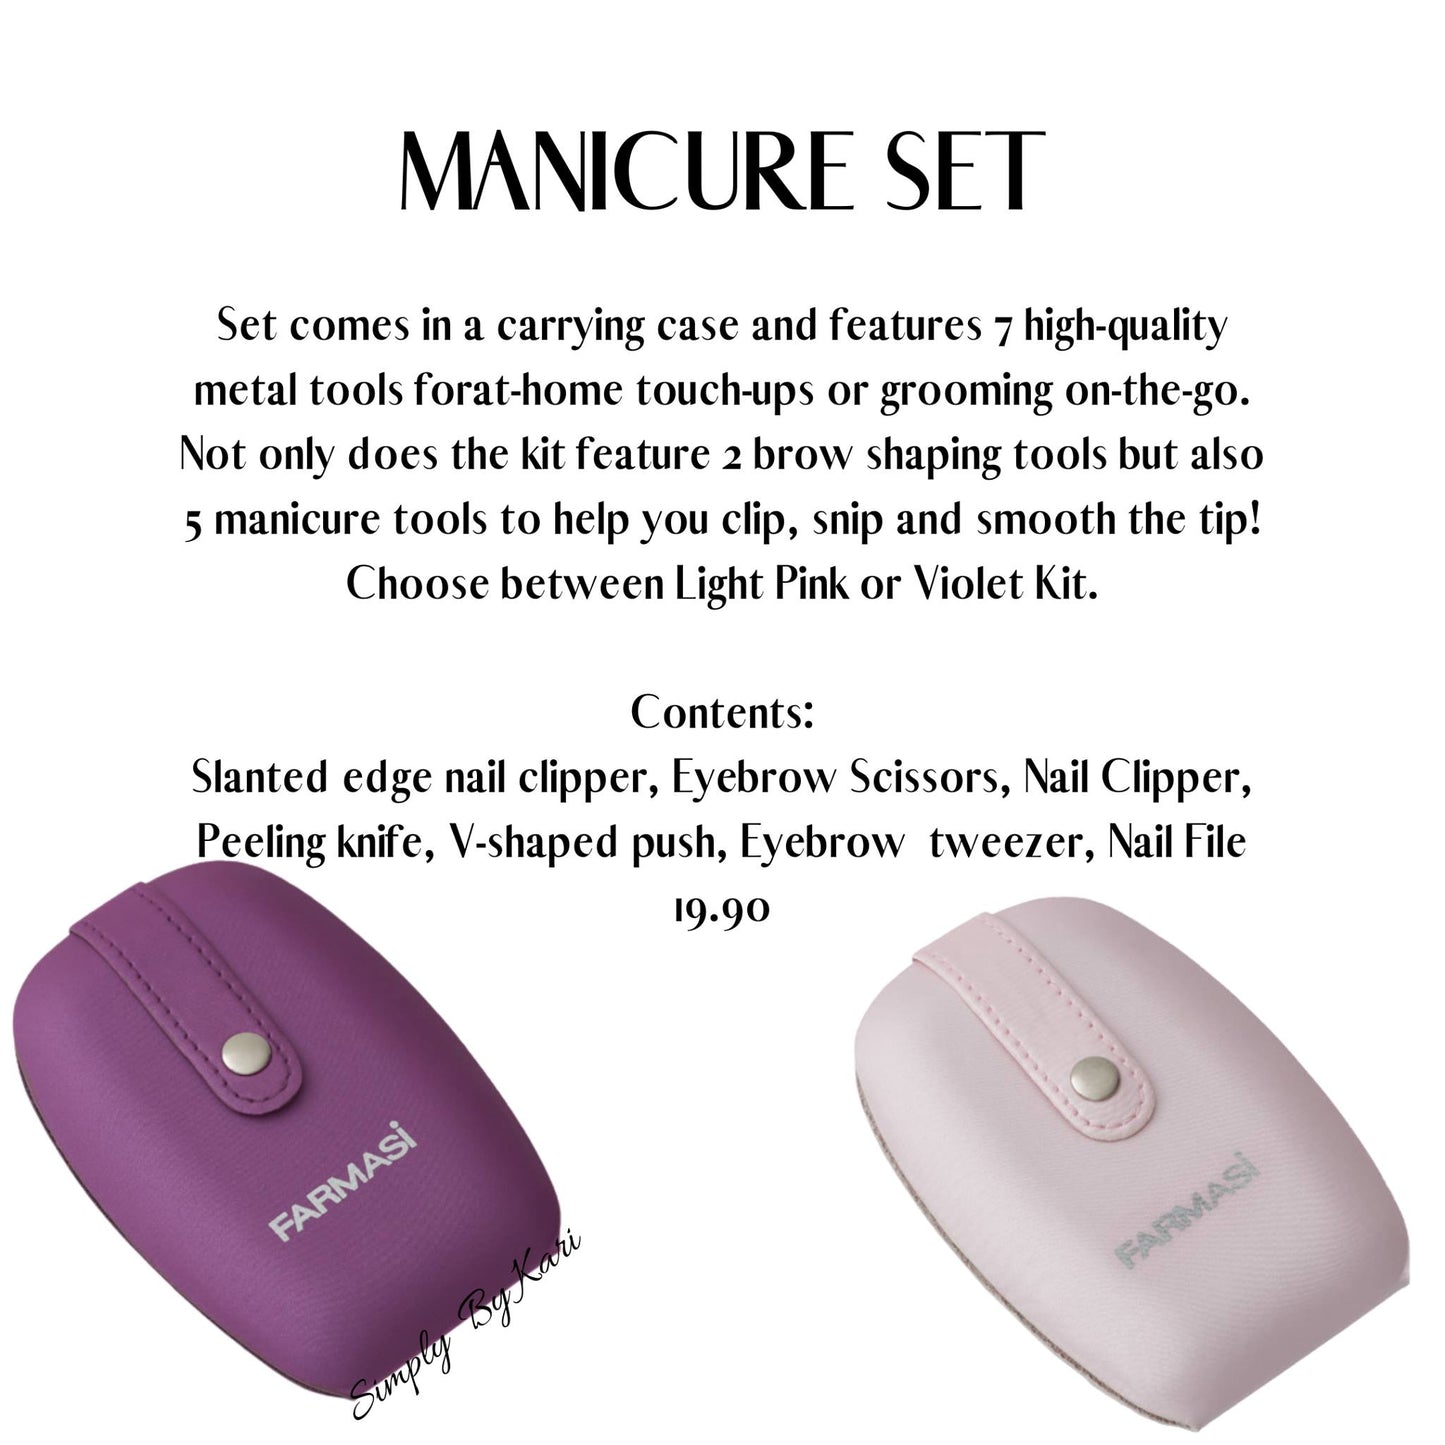 Manicure & Eyebrow Kit - purple or pink case | Farmasi